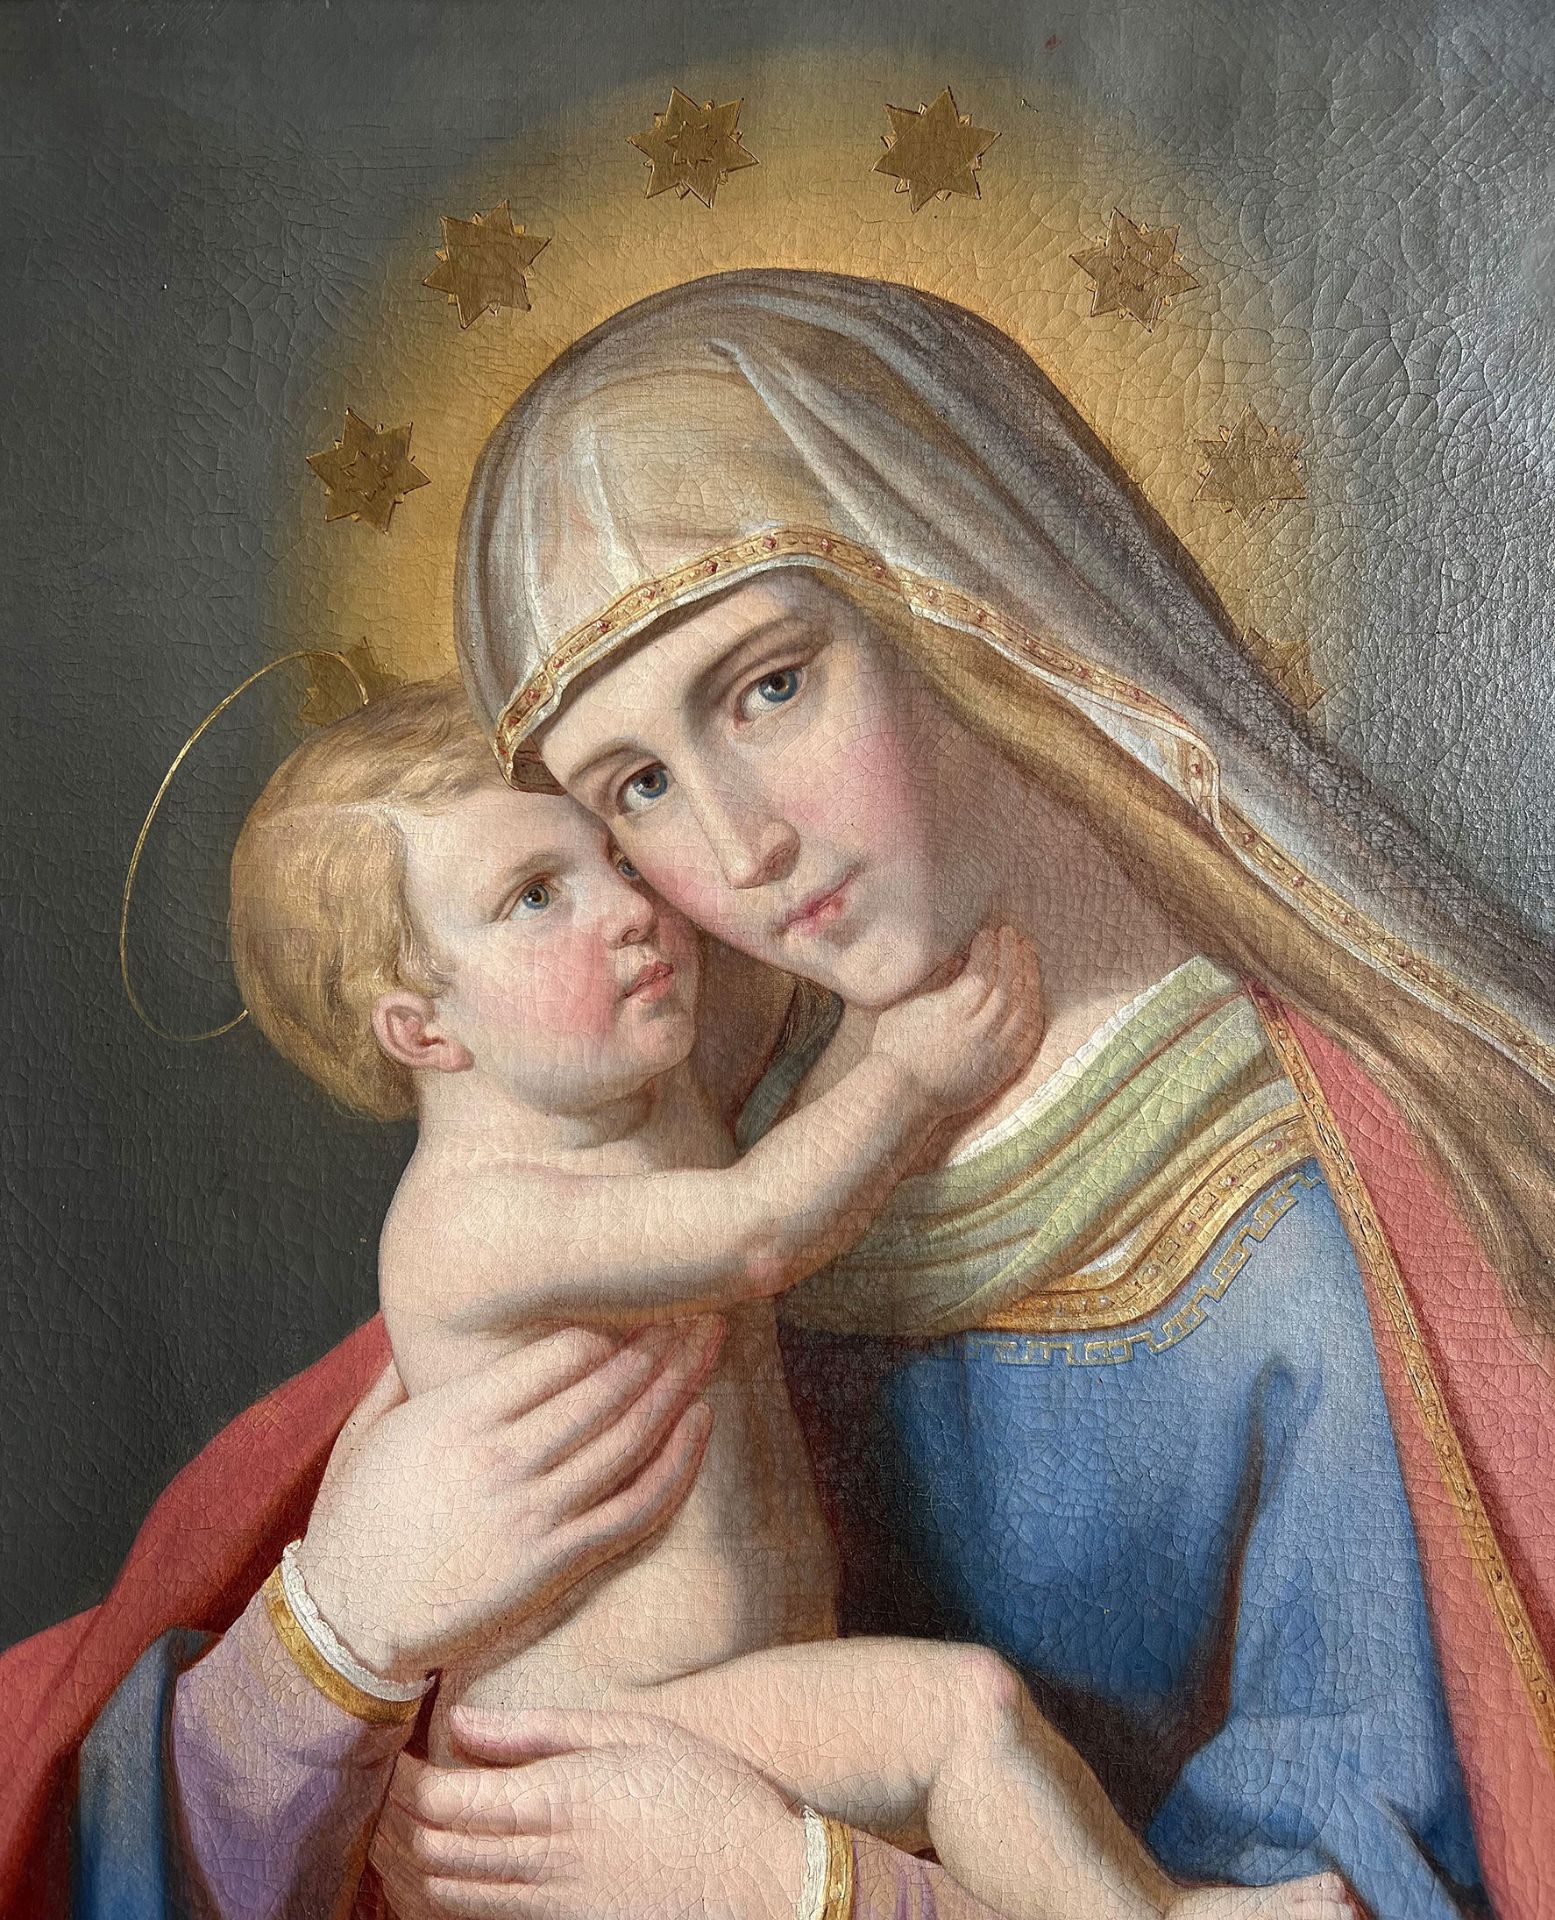 Maria mit dem Jeusknaben/ St. Mary with baby Jesus. Nazarener bzw Präraffaelitisch, Mitte 19. Jh., - Image 4 of 5